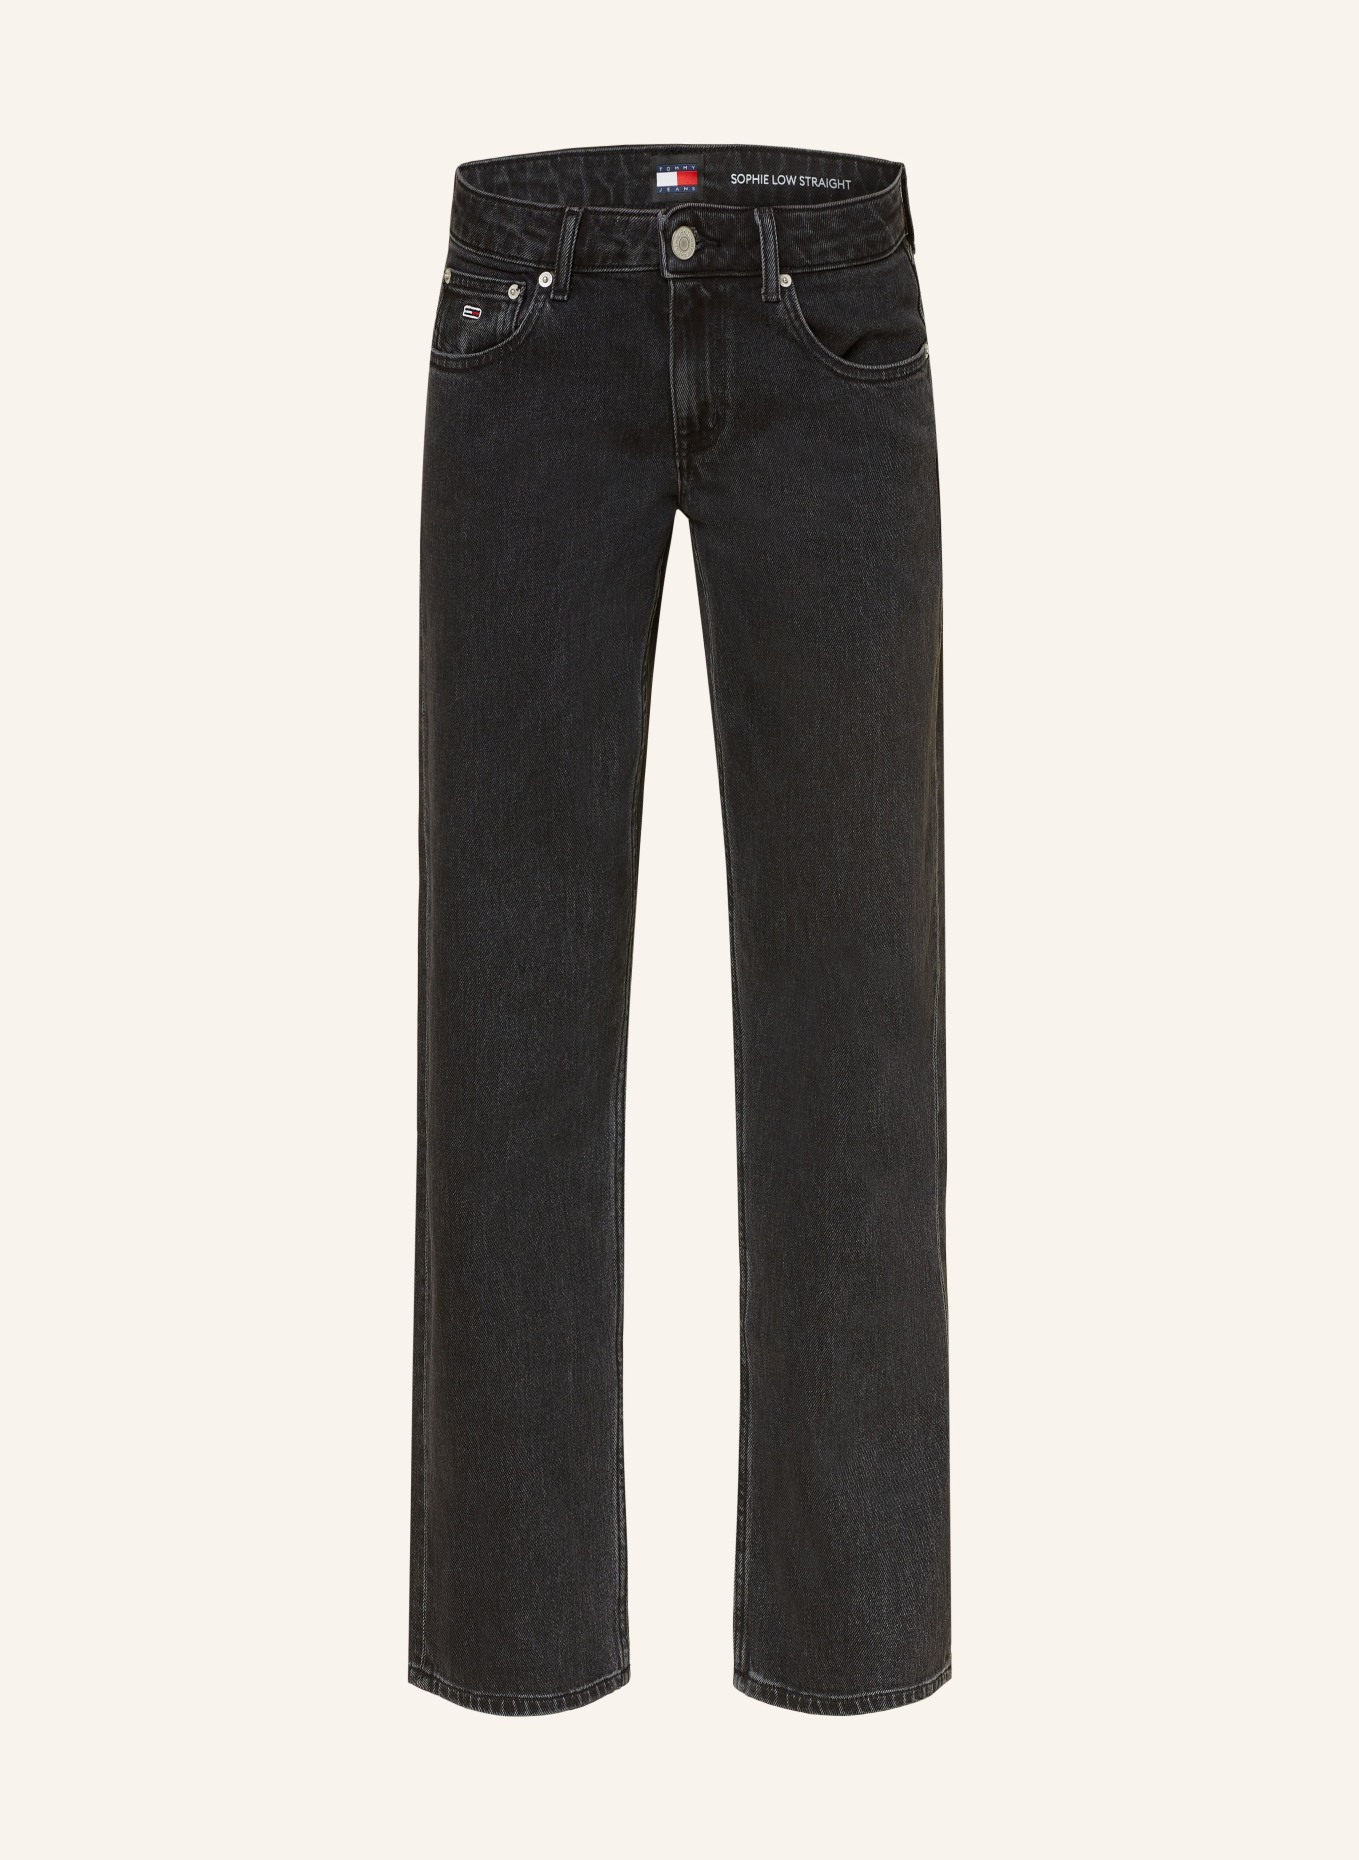 TOMMY JEANS Straight jeans SOPHIE, Color: 1BZ Denim Black (Image 1)